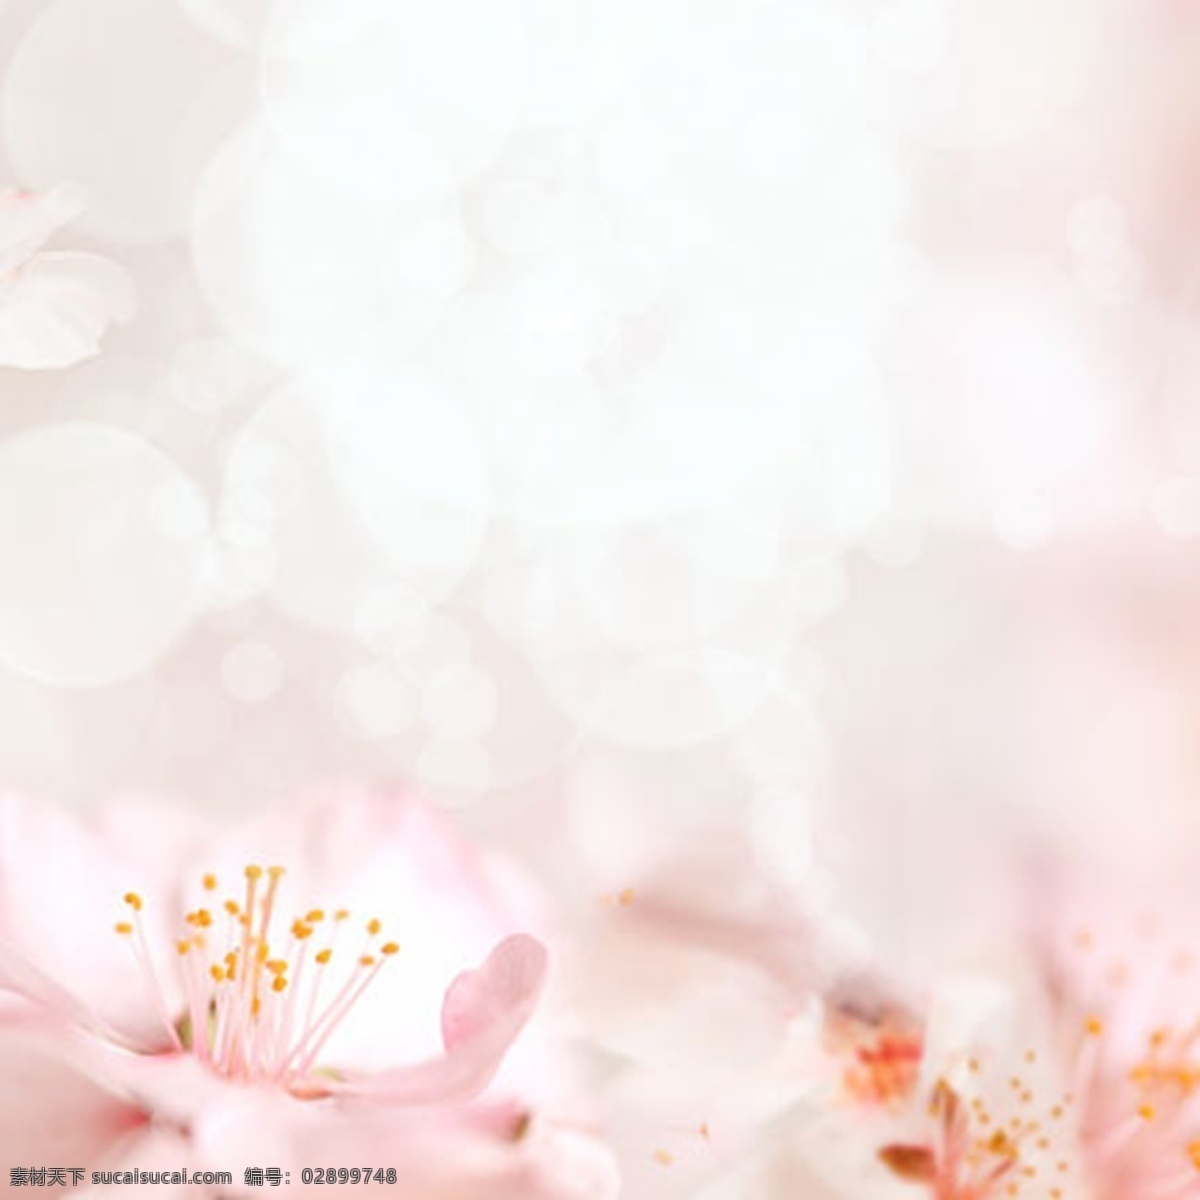 粉色 浪漫 梦幻 背景 图 简约 清爽 唯美 绿色 花朵 女装 清新 护肤品 玫瑰花 白色